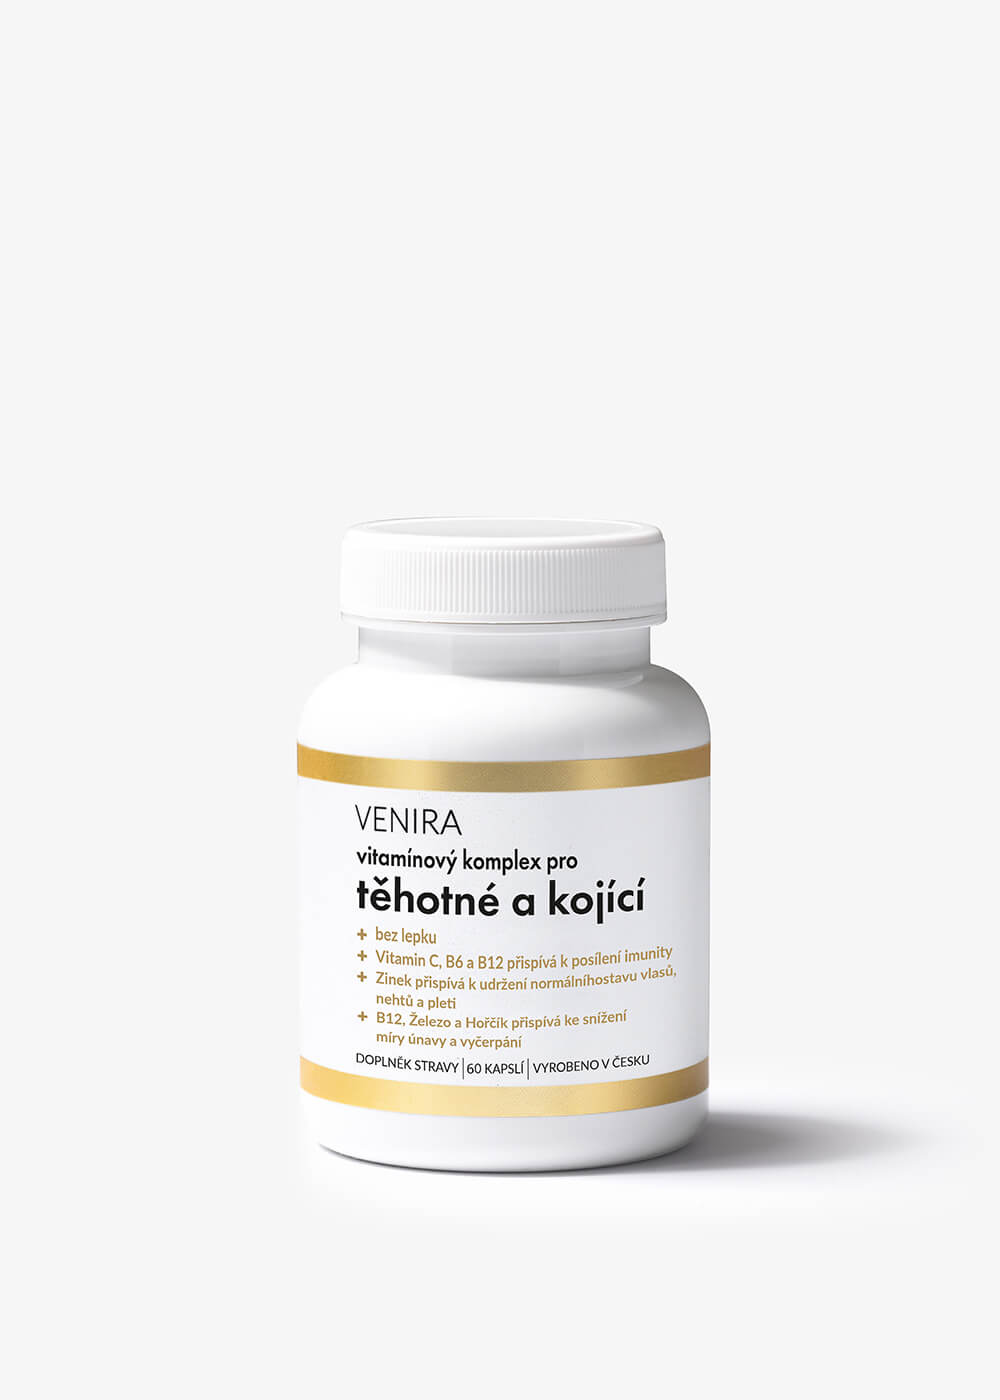 VENIRA vitamínový komplex pre tehotné a dojčiace ženy, 60 kapsúl 60 kapsúl